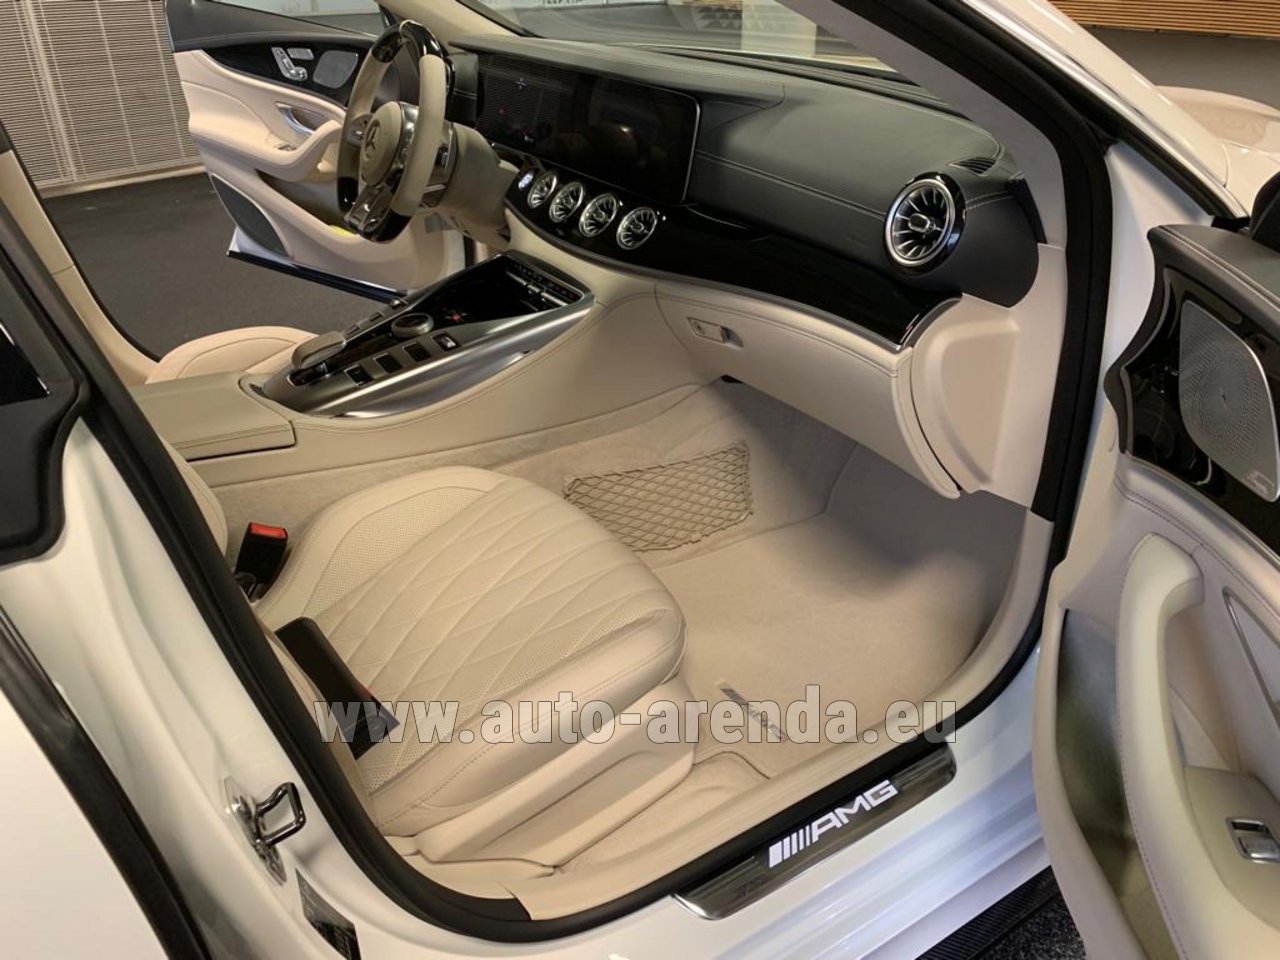 Rent The Mercedes Benz Amg Gt 63 S 4 Door Coupe 4matic Car In Monaco